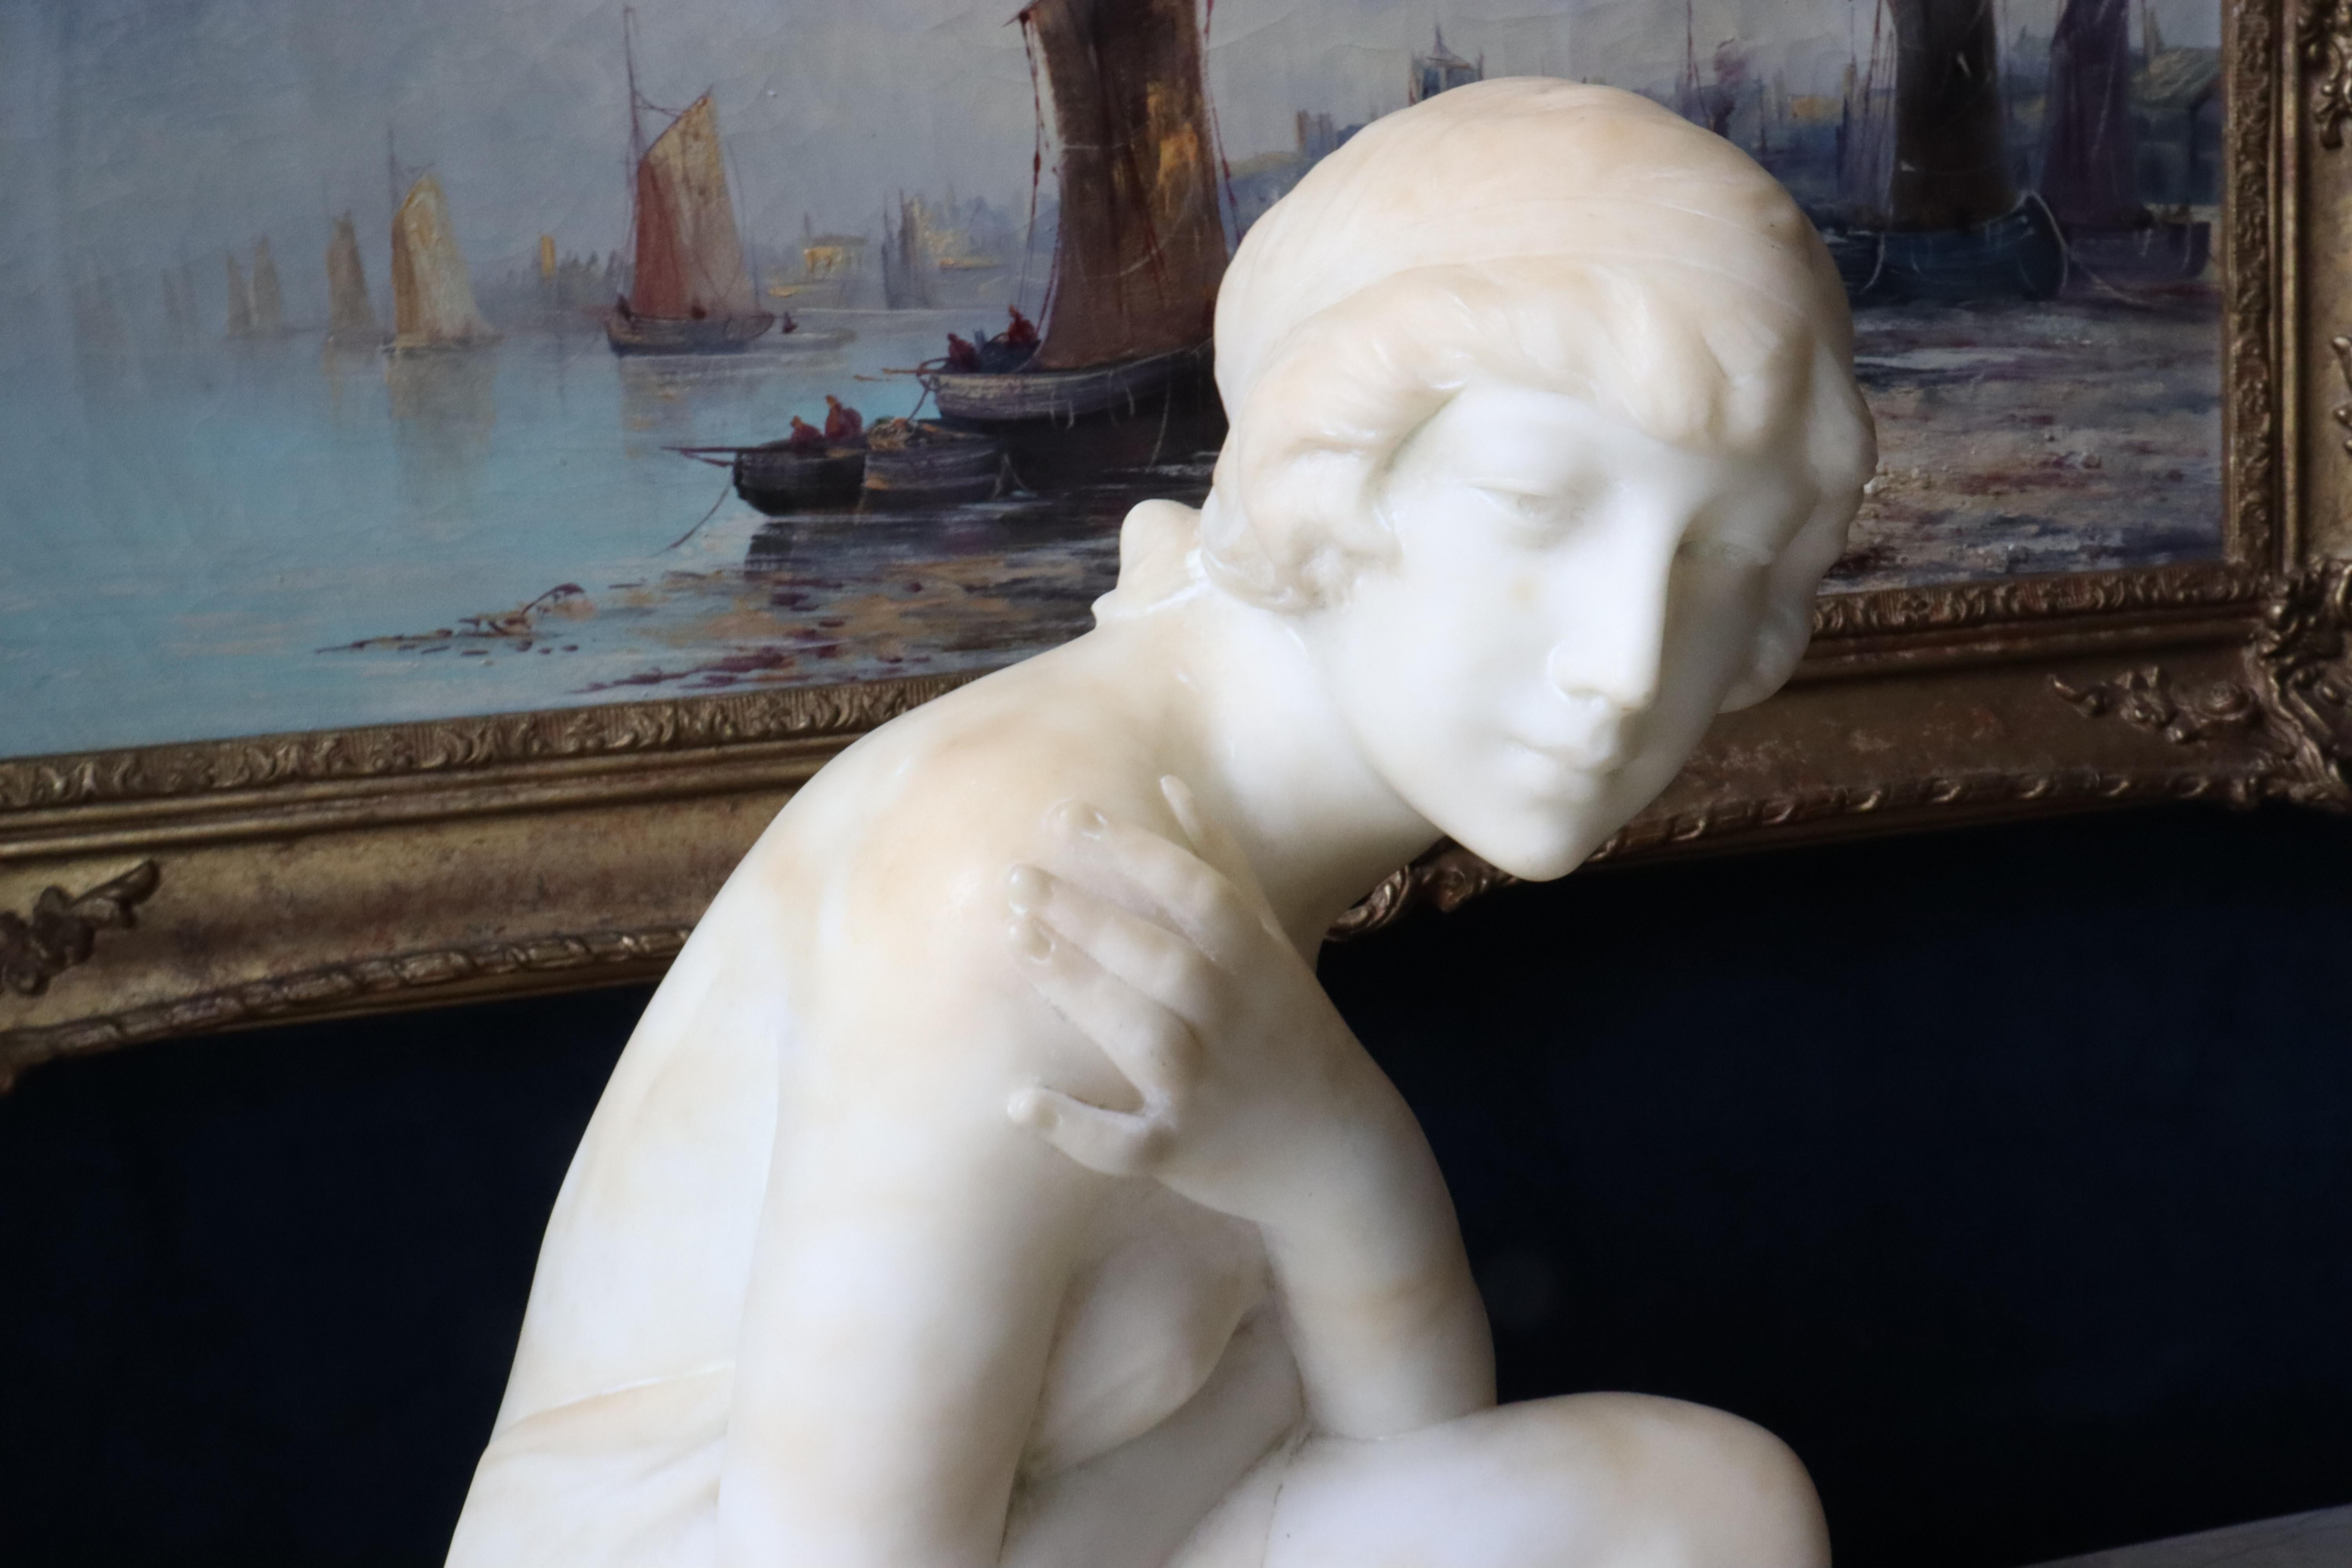 Sculpture en albâtre Art Nouveau italien du début du XXe siècle représentant une jeune baigneuse.  Le baigneur est assis sur une pierre, les bras croisés, dans une pose modeste.  Le baigneur est semi-nu.  Quelques éraflures et rayures mineures.  La